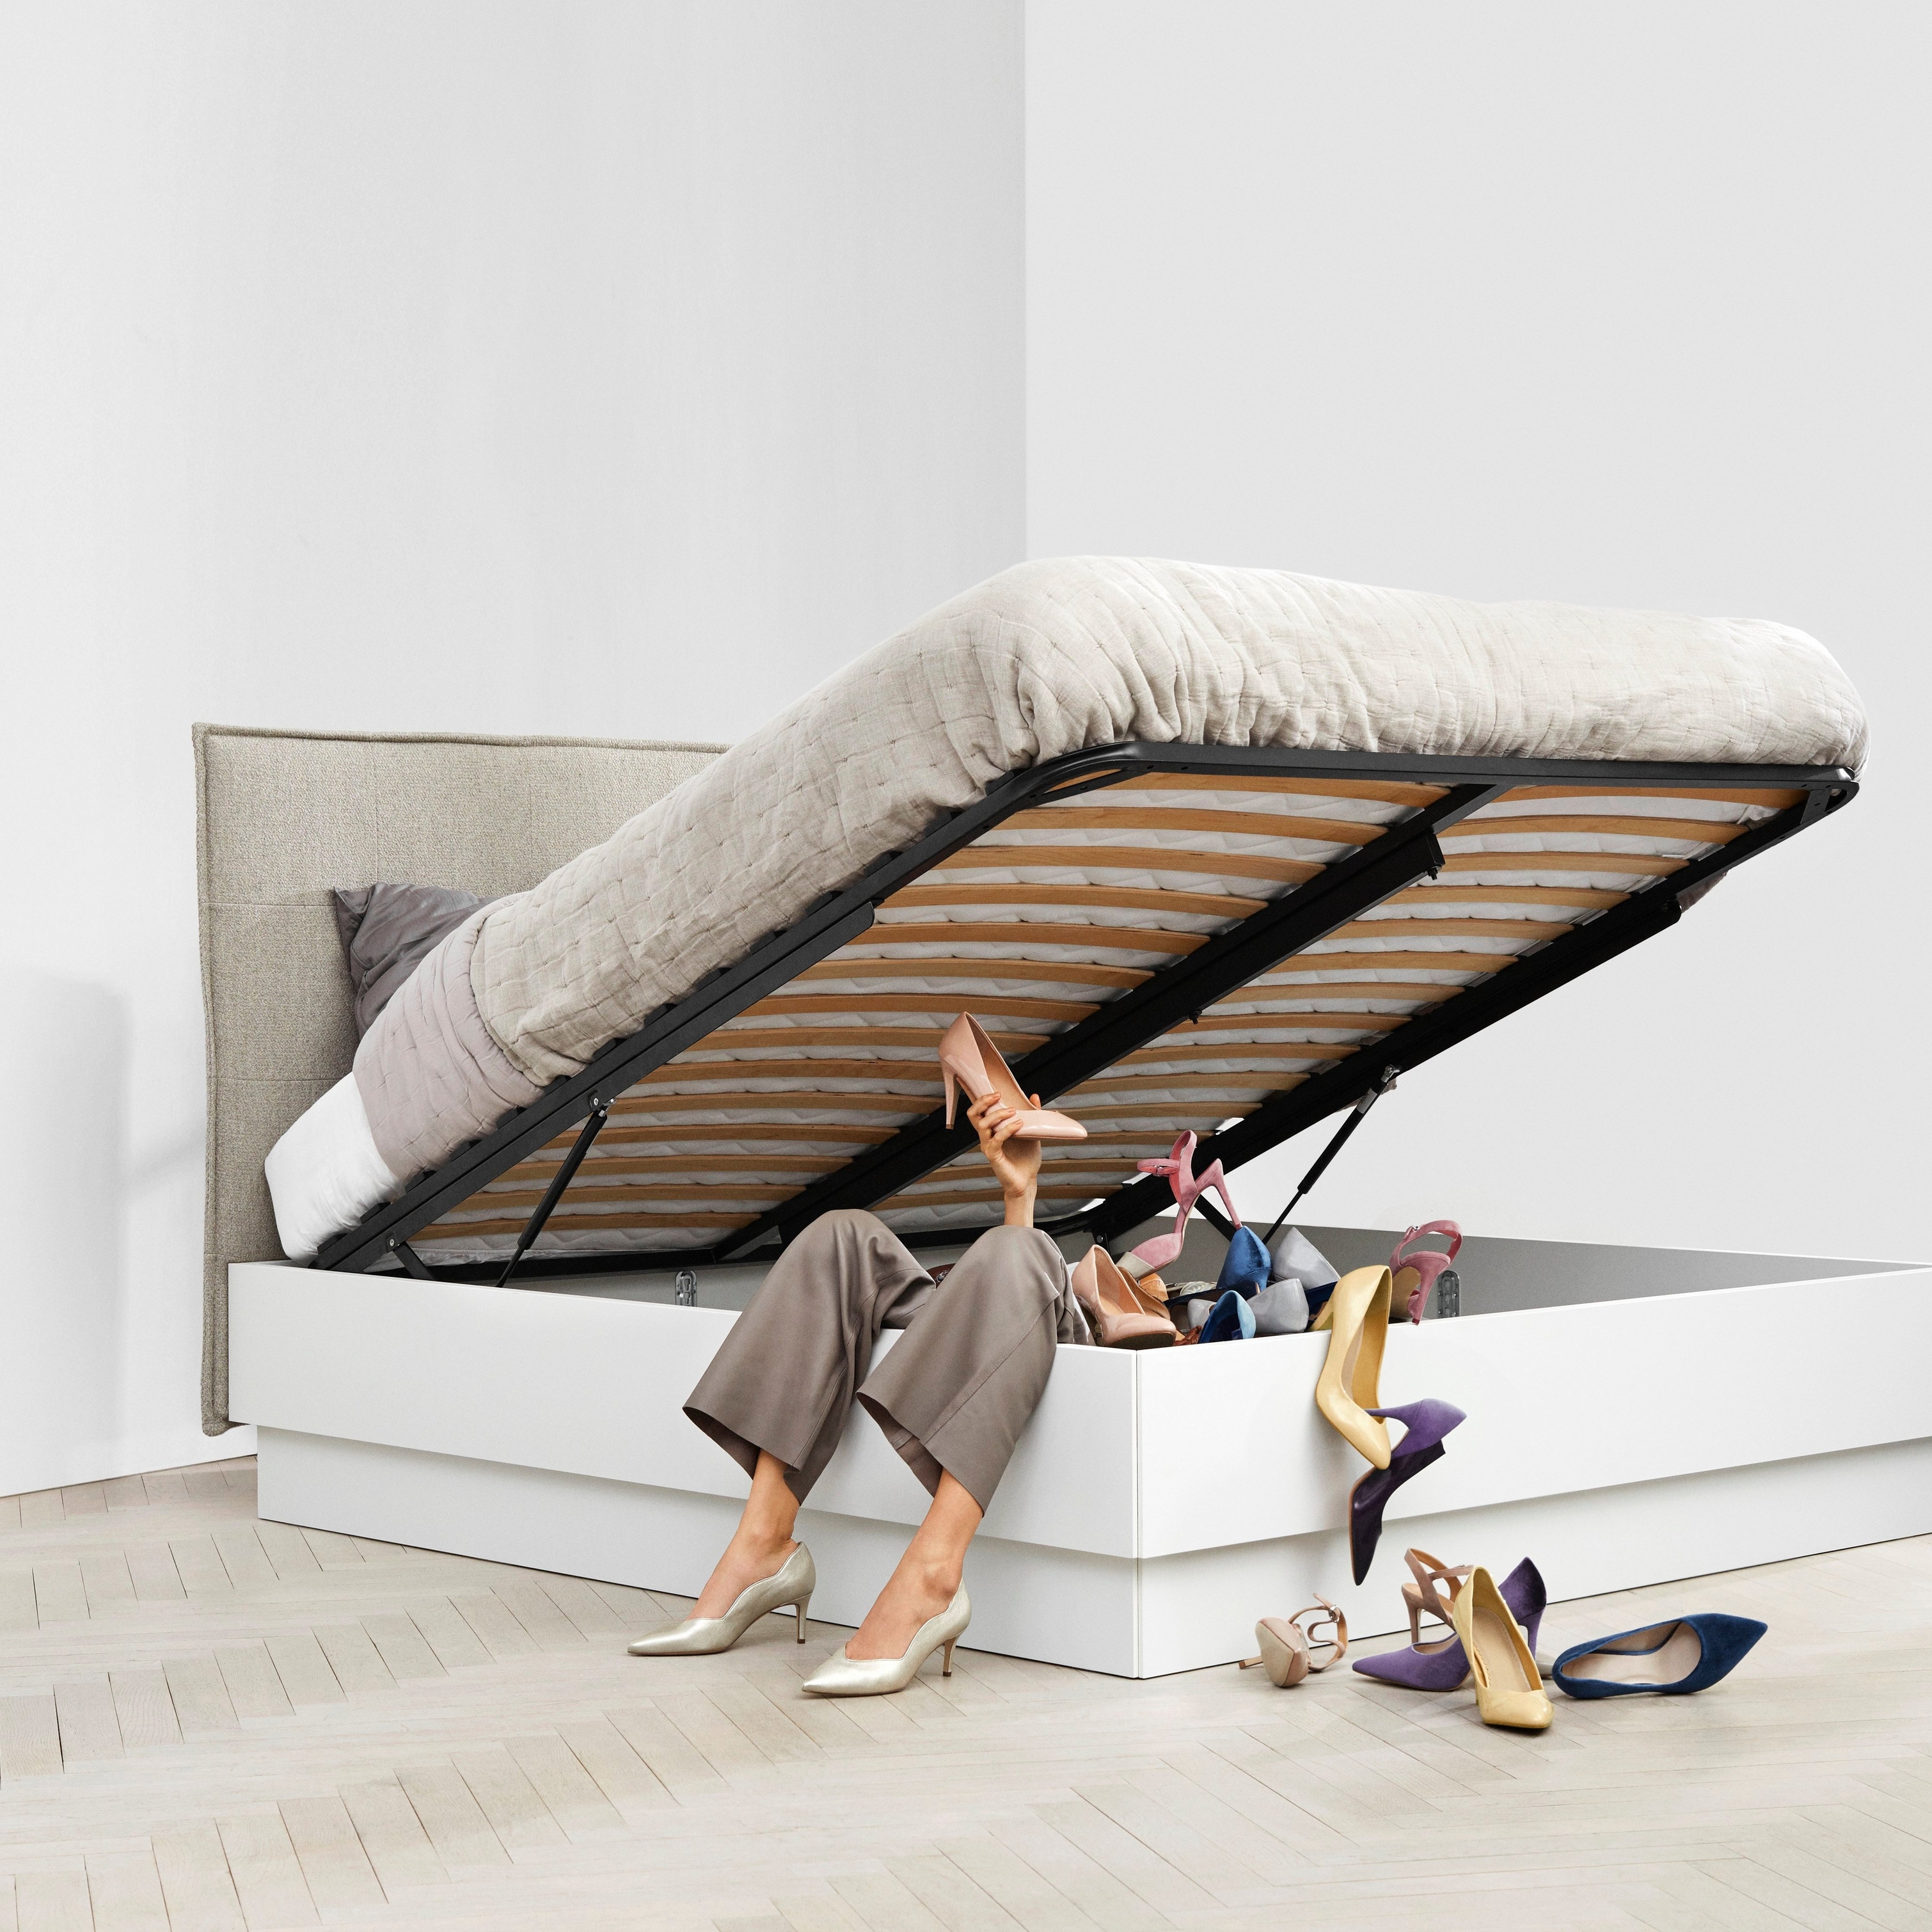 Женщина сидит под поднятой кроватью с пространством для хранения в окружении разбросанных туфель.